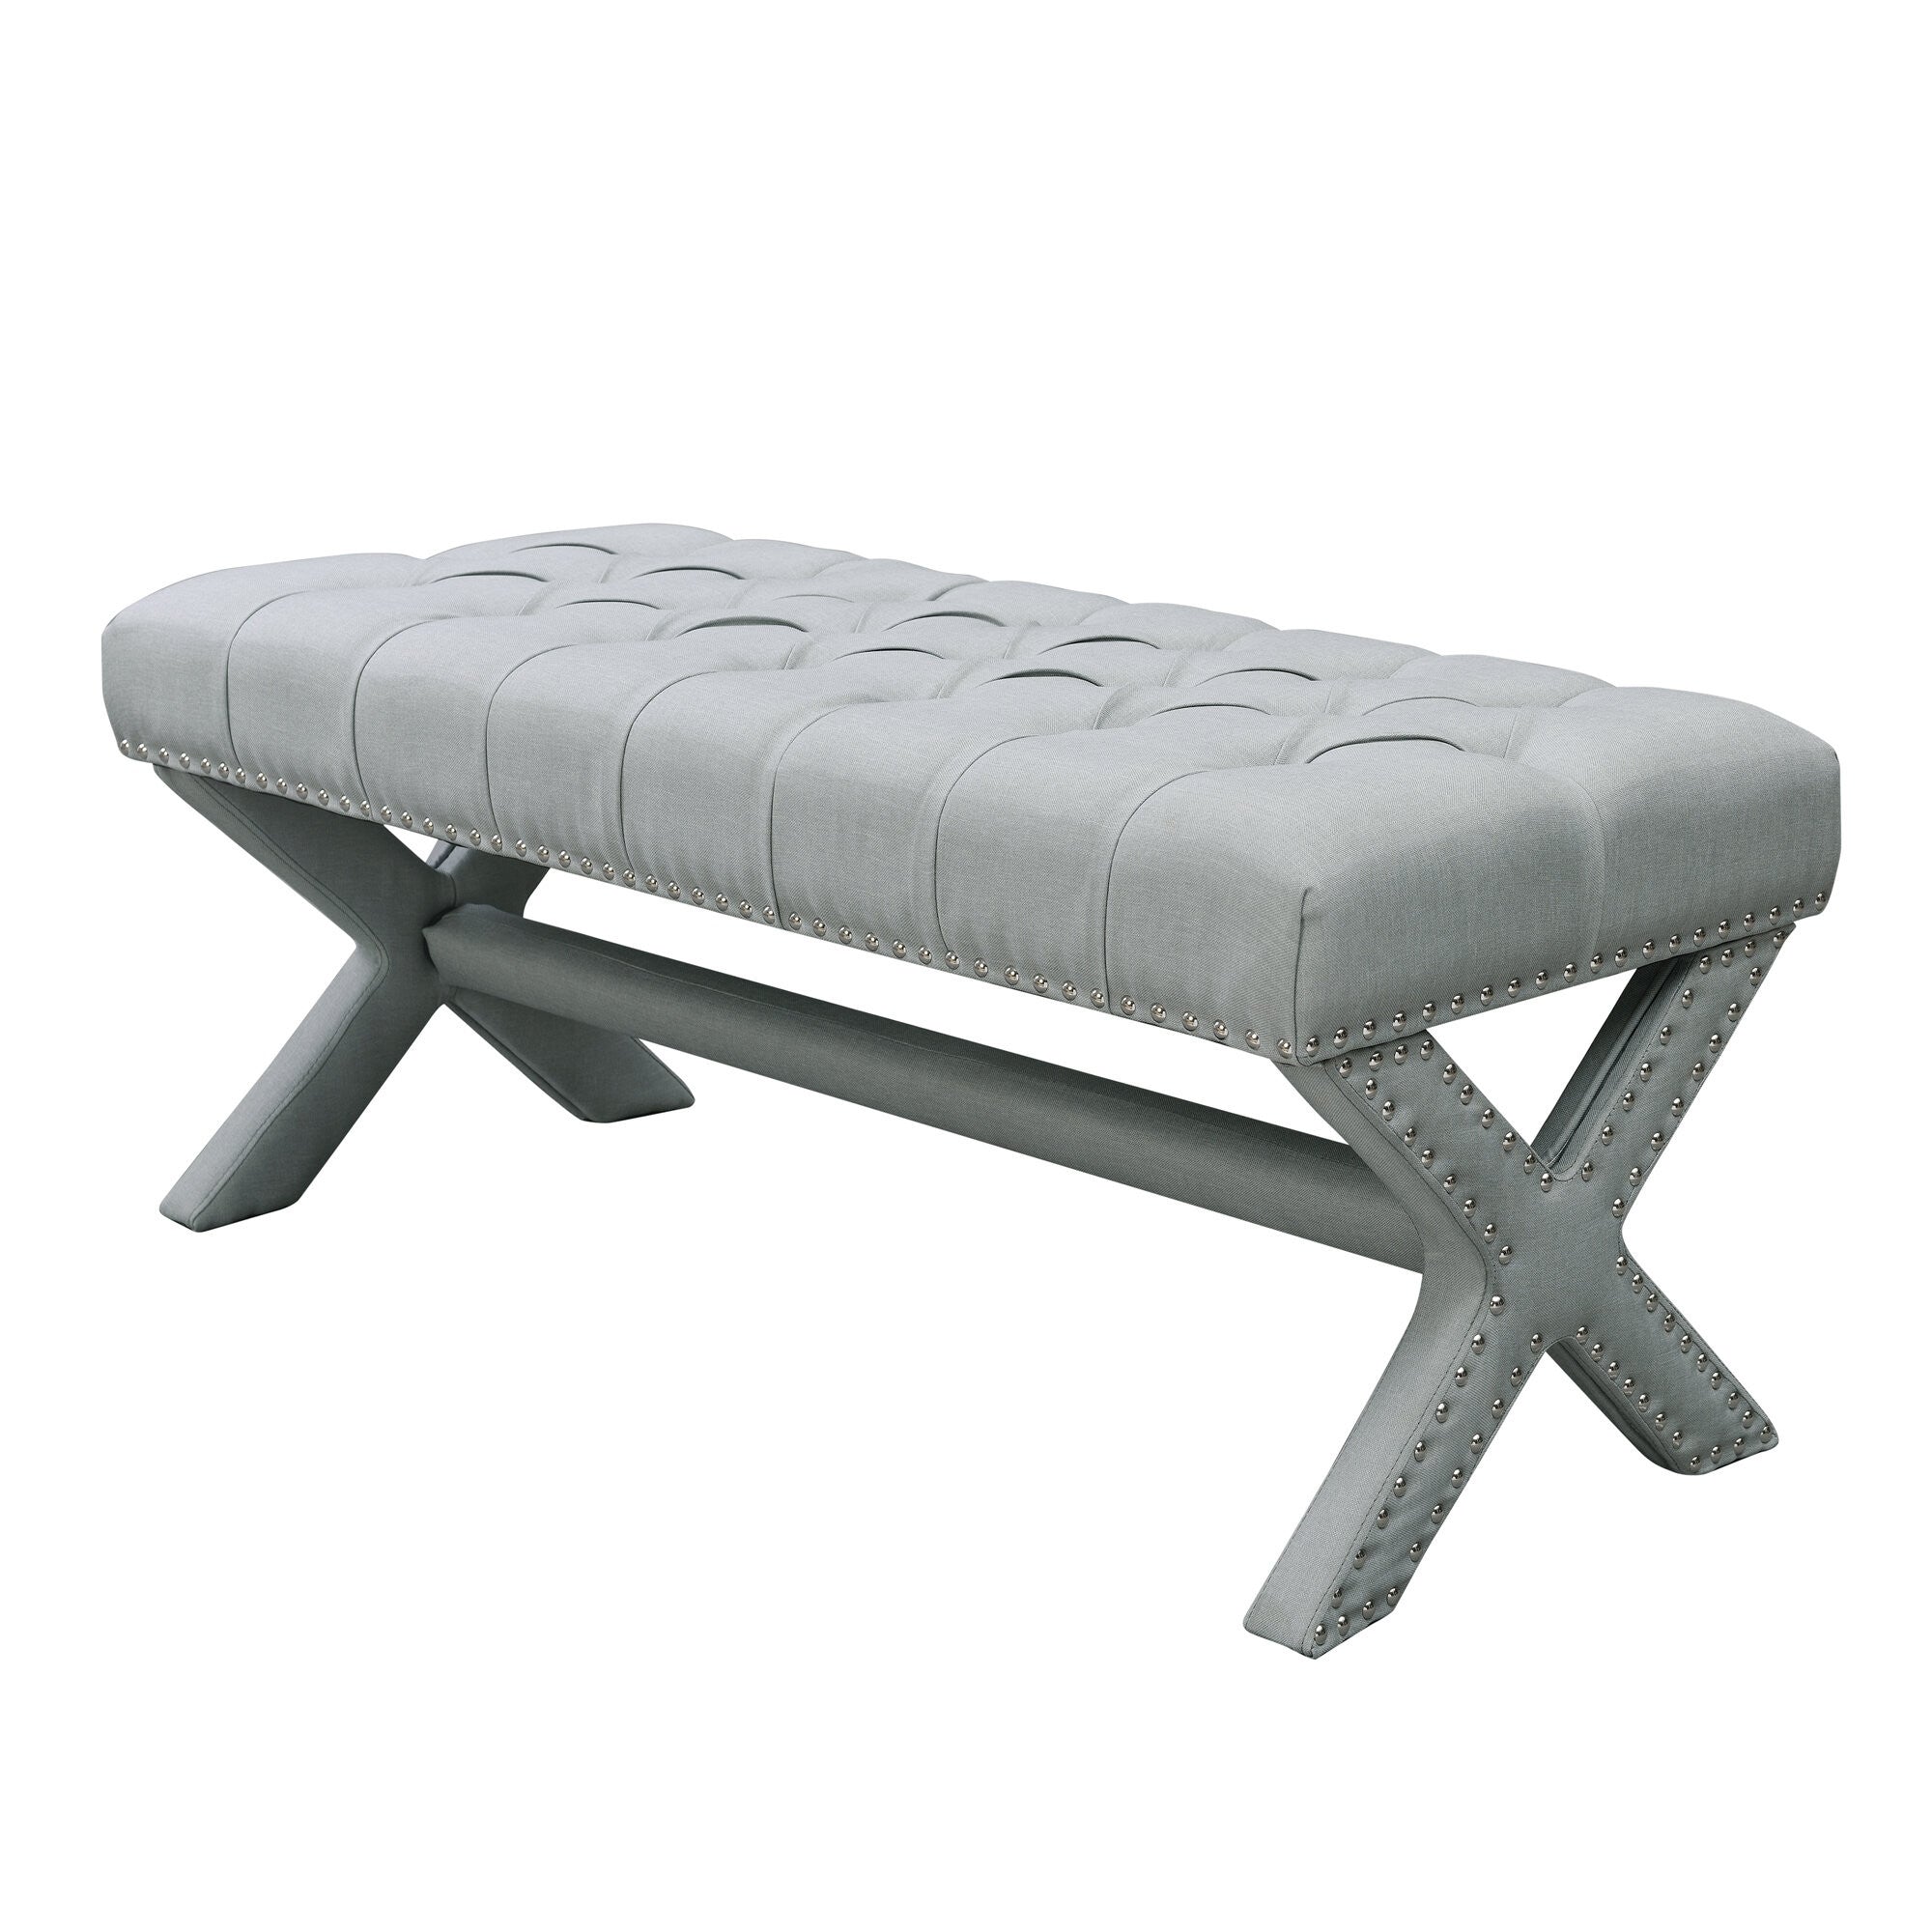 45" Cream Upholstered Linen Bench